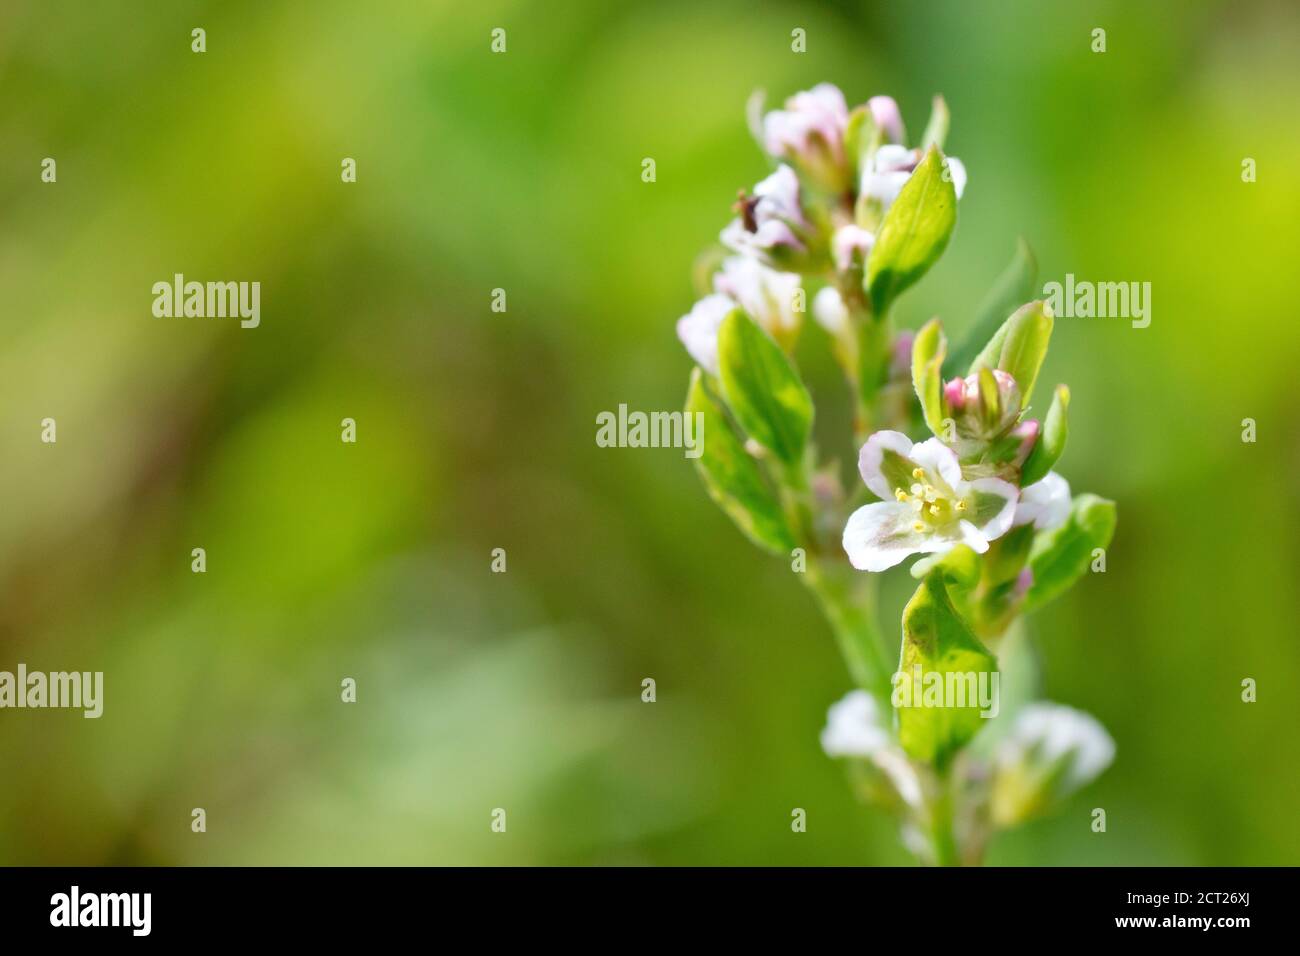 Knoterras (polygonum aviculare), Nahaufnahme eines einzelnen Stiels mit den kleinen weißen Blüten, isoliert vor einem unscharf grünen Hintergrund. Stockfoto